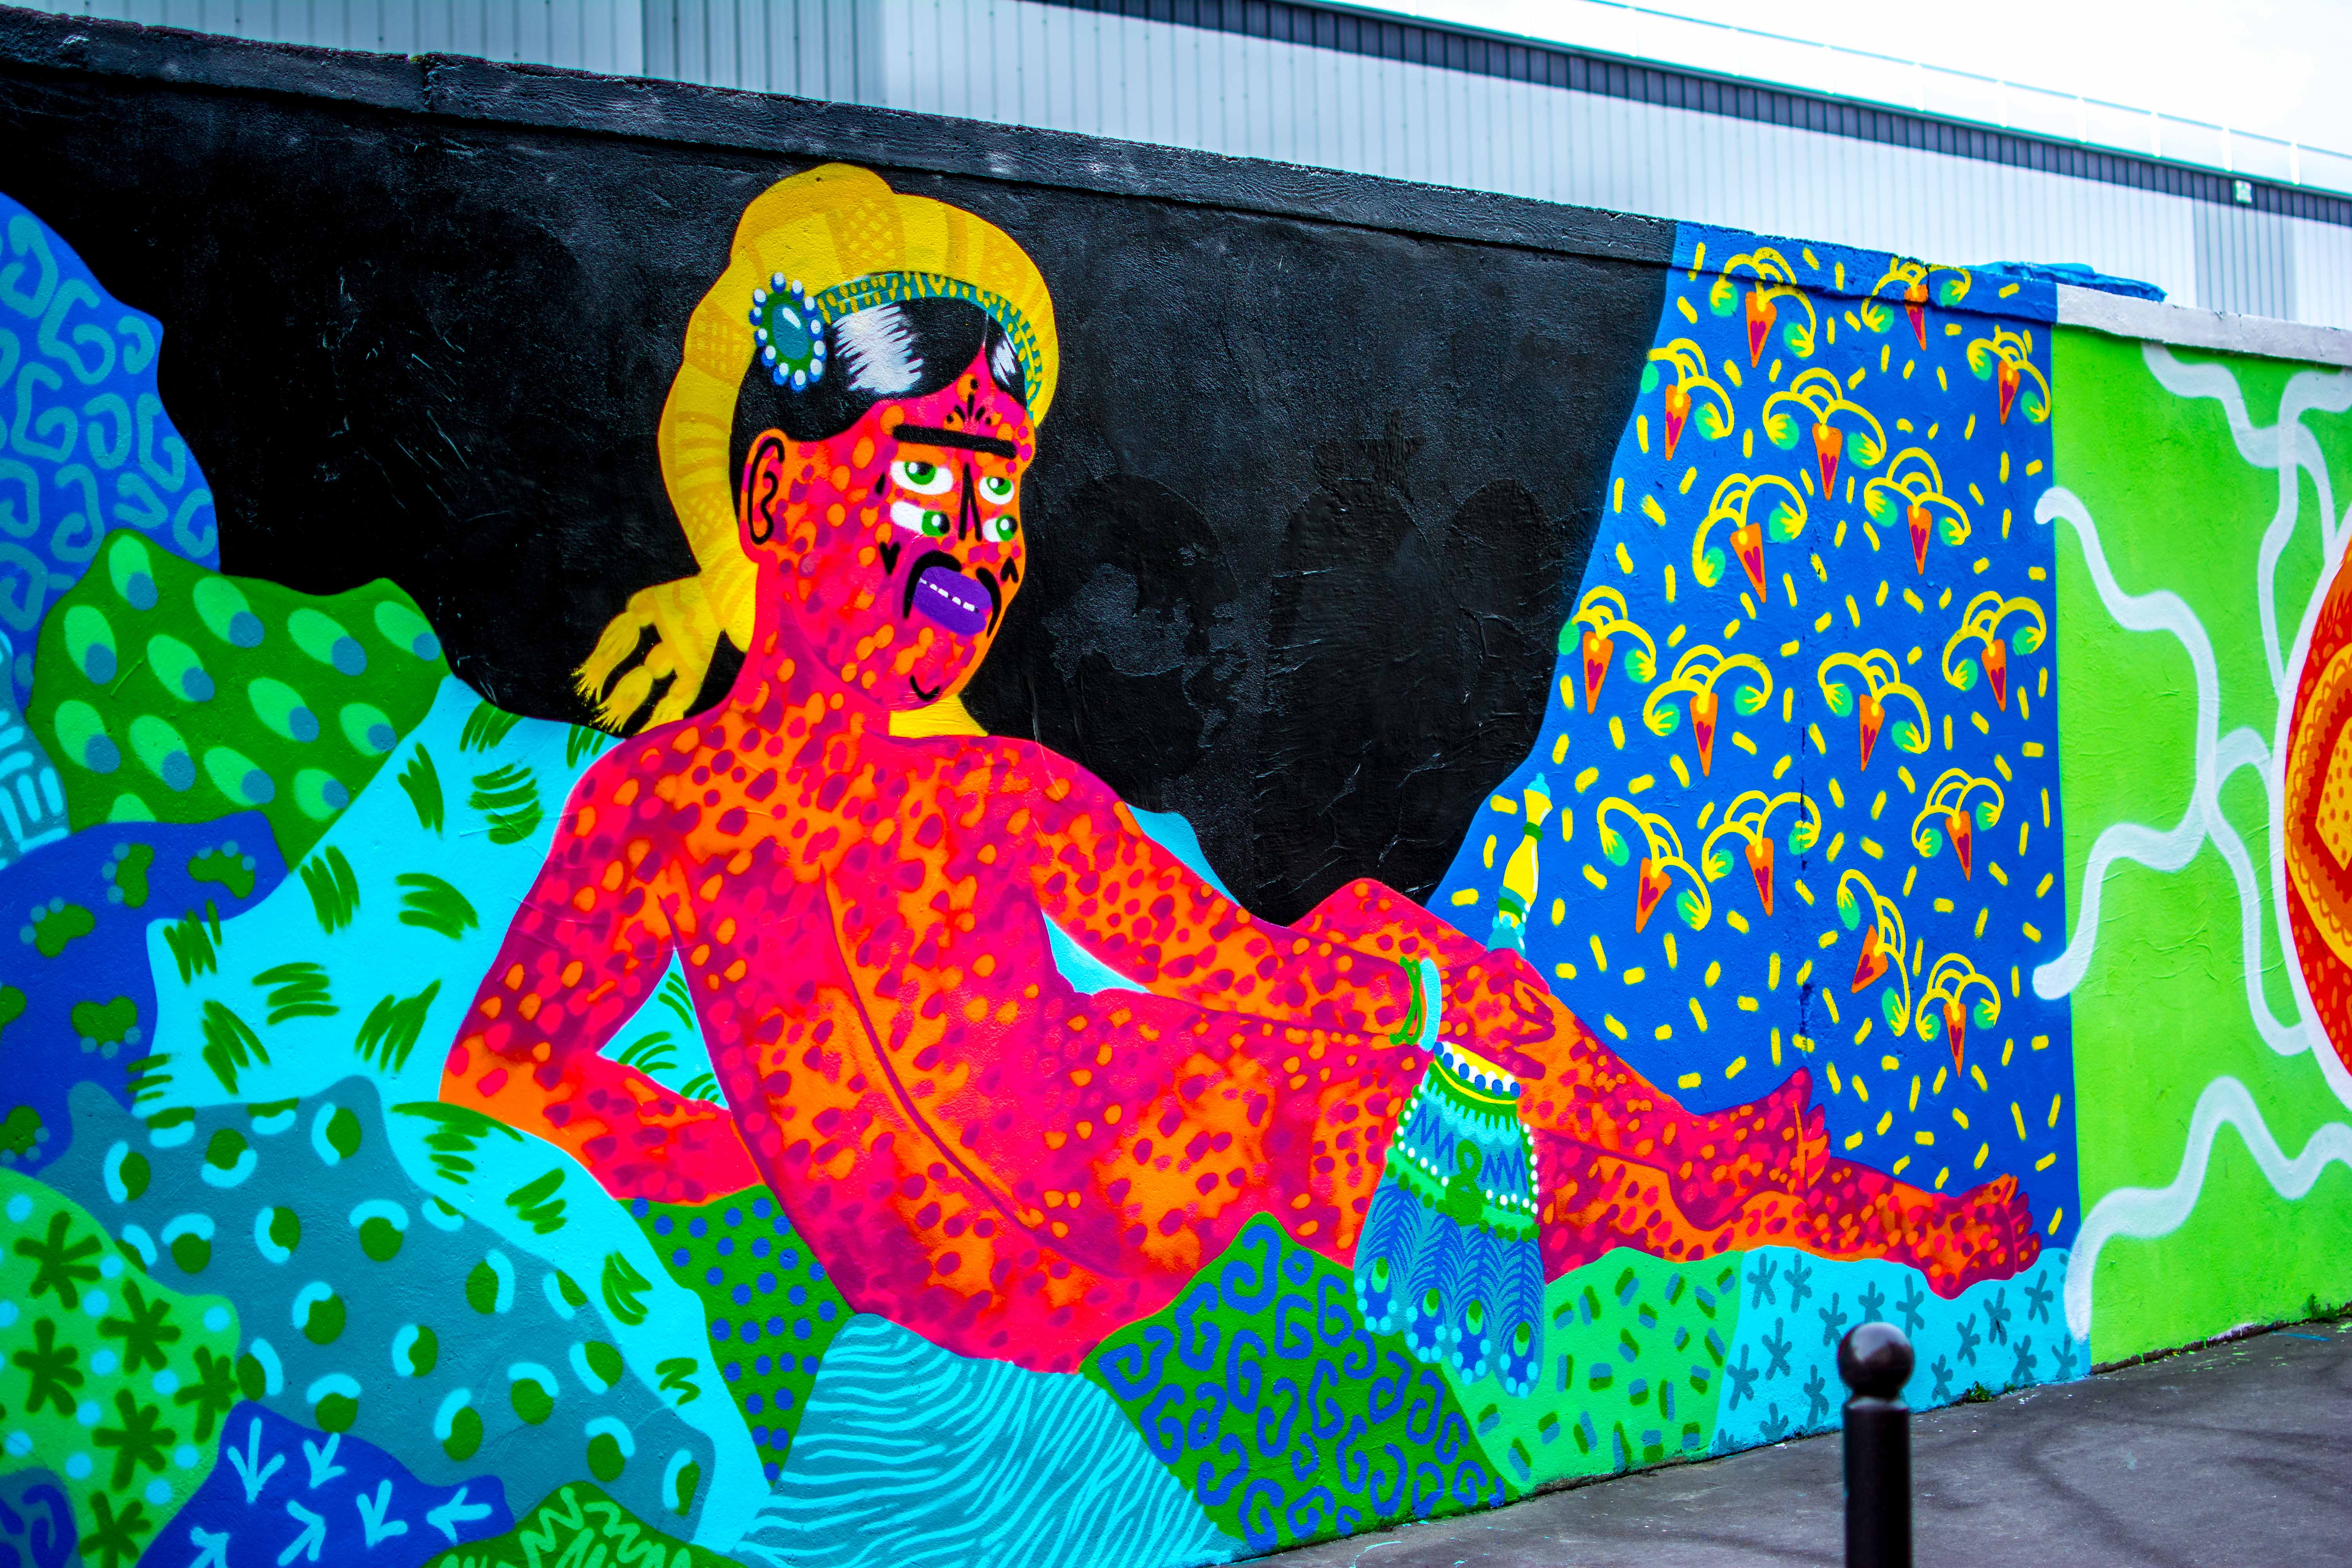 rosa parks fait le mur streetart street art paris blogvoyage blog voyage icietlabas